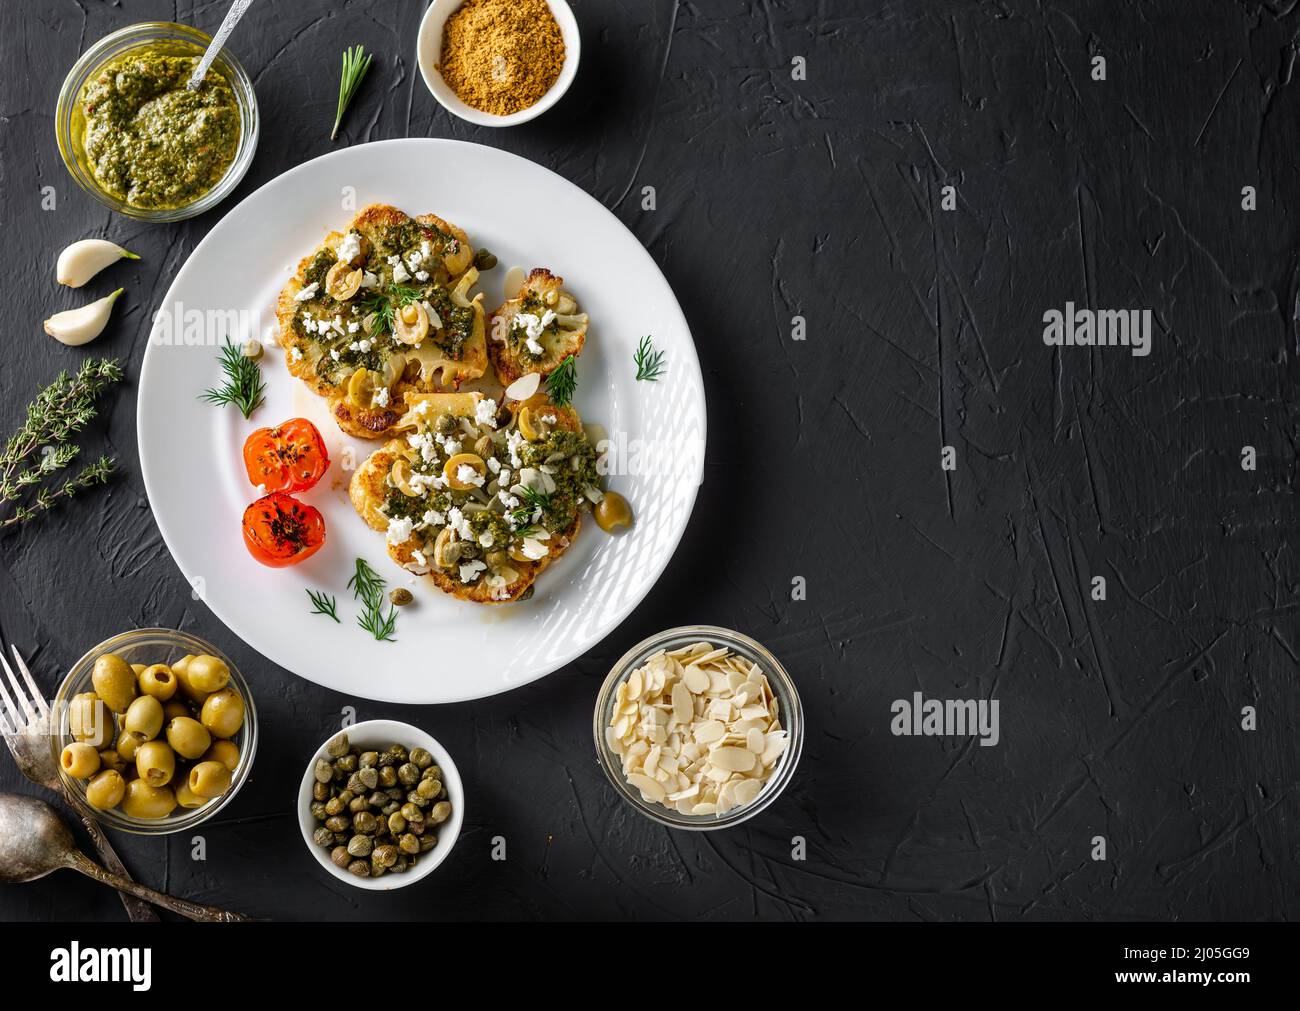 Blumenkohlesteak mit Gewürzen, Chimichurri-Sauce, Mandelflocken, Oliven, gebratenen Kirschtomaten und Kapern auf einem weißen Teller. Dunkler Hintergrund. Copyspace Stockfoto